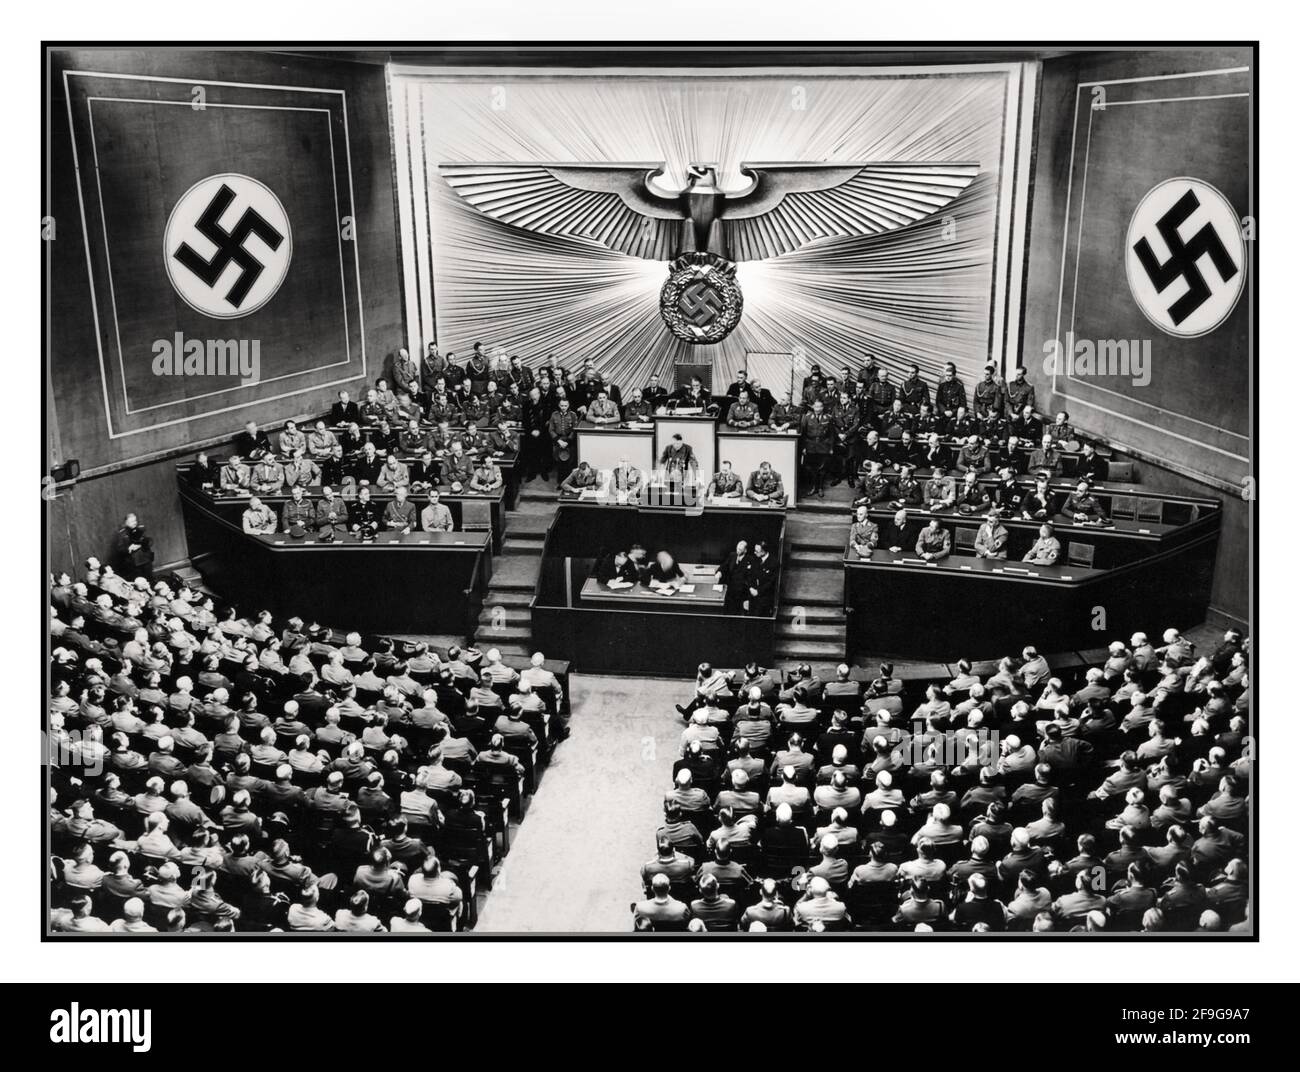 Adolf Hitler Rede 1940 Reichstag-Sitzung des Zweiten Weltkriegs in der Berliner Kroll Oper am 19. Juli 1940 nach dem Sieg über Frankreich: "Hitler spricht als siegreicher General" Frankreich Französische Besetzung durch deutsche Nazi-Streitkräfte Stockfoto